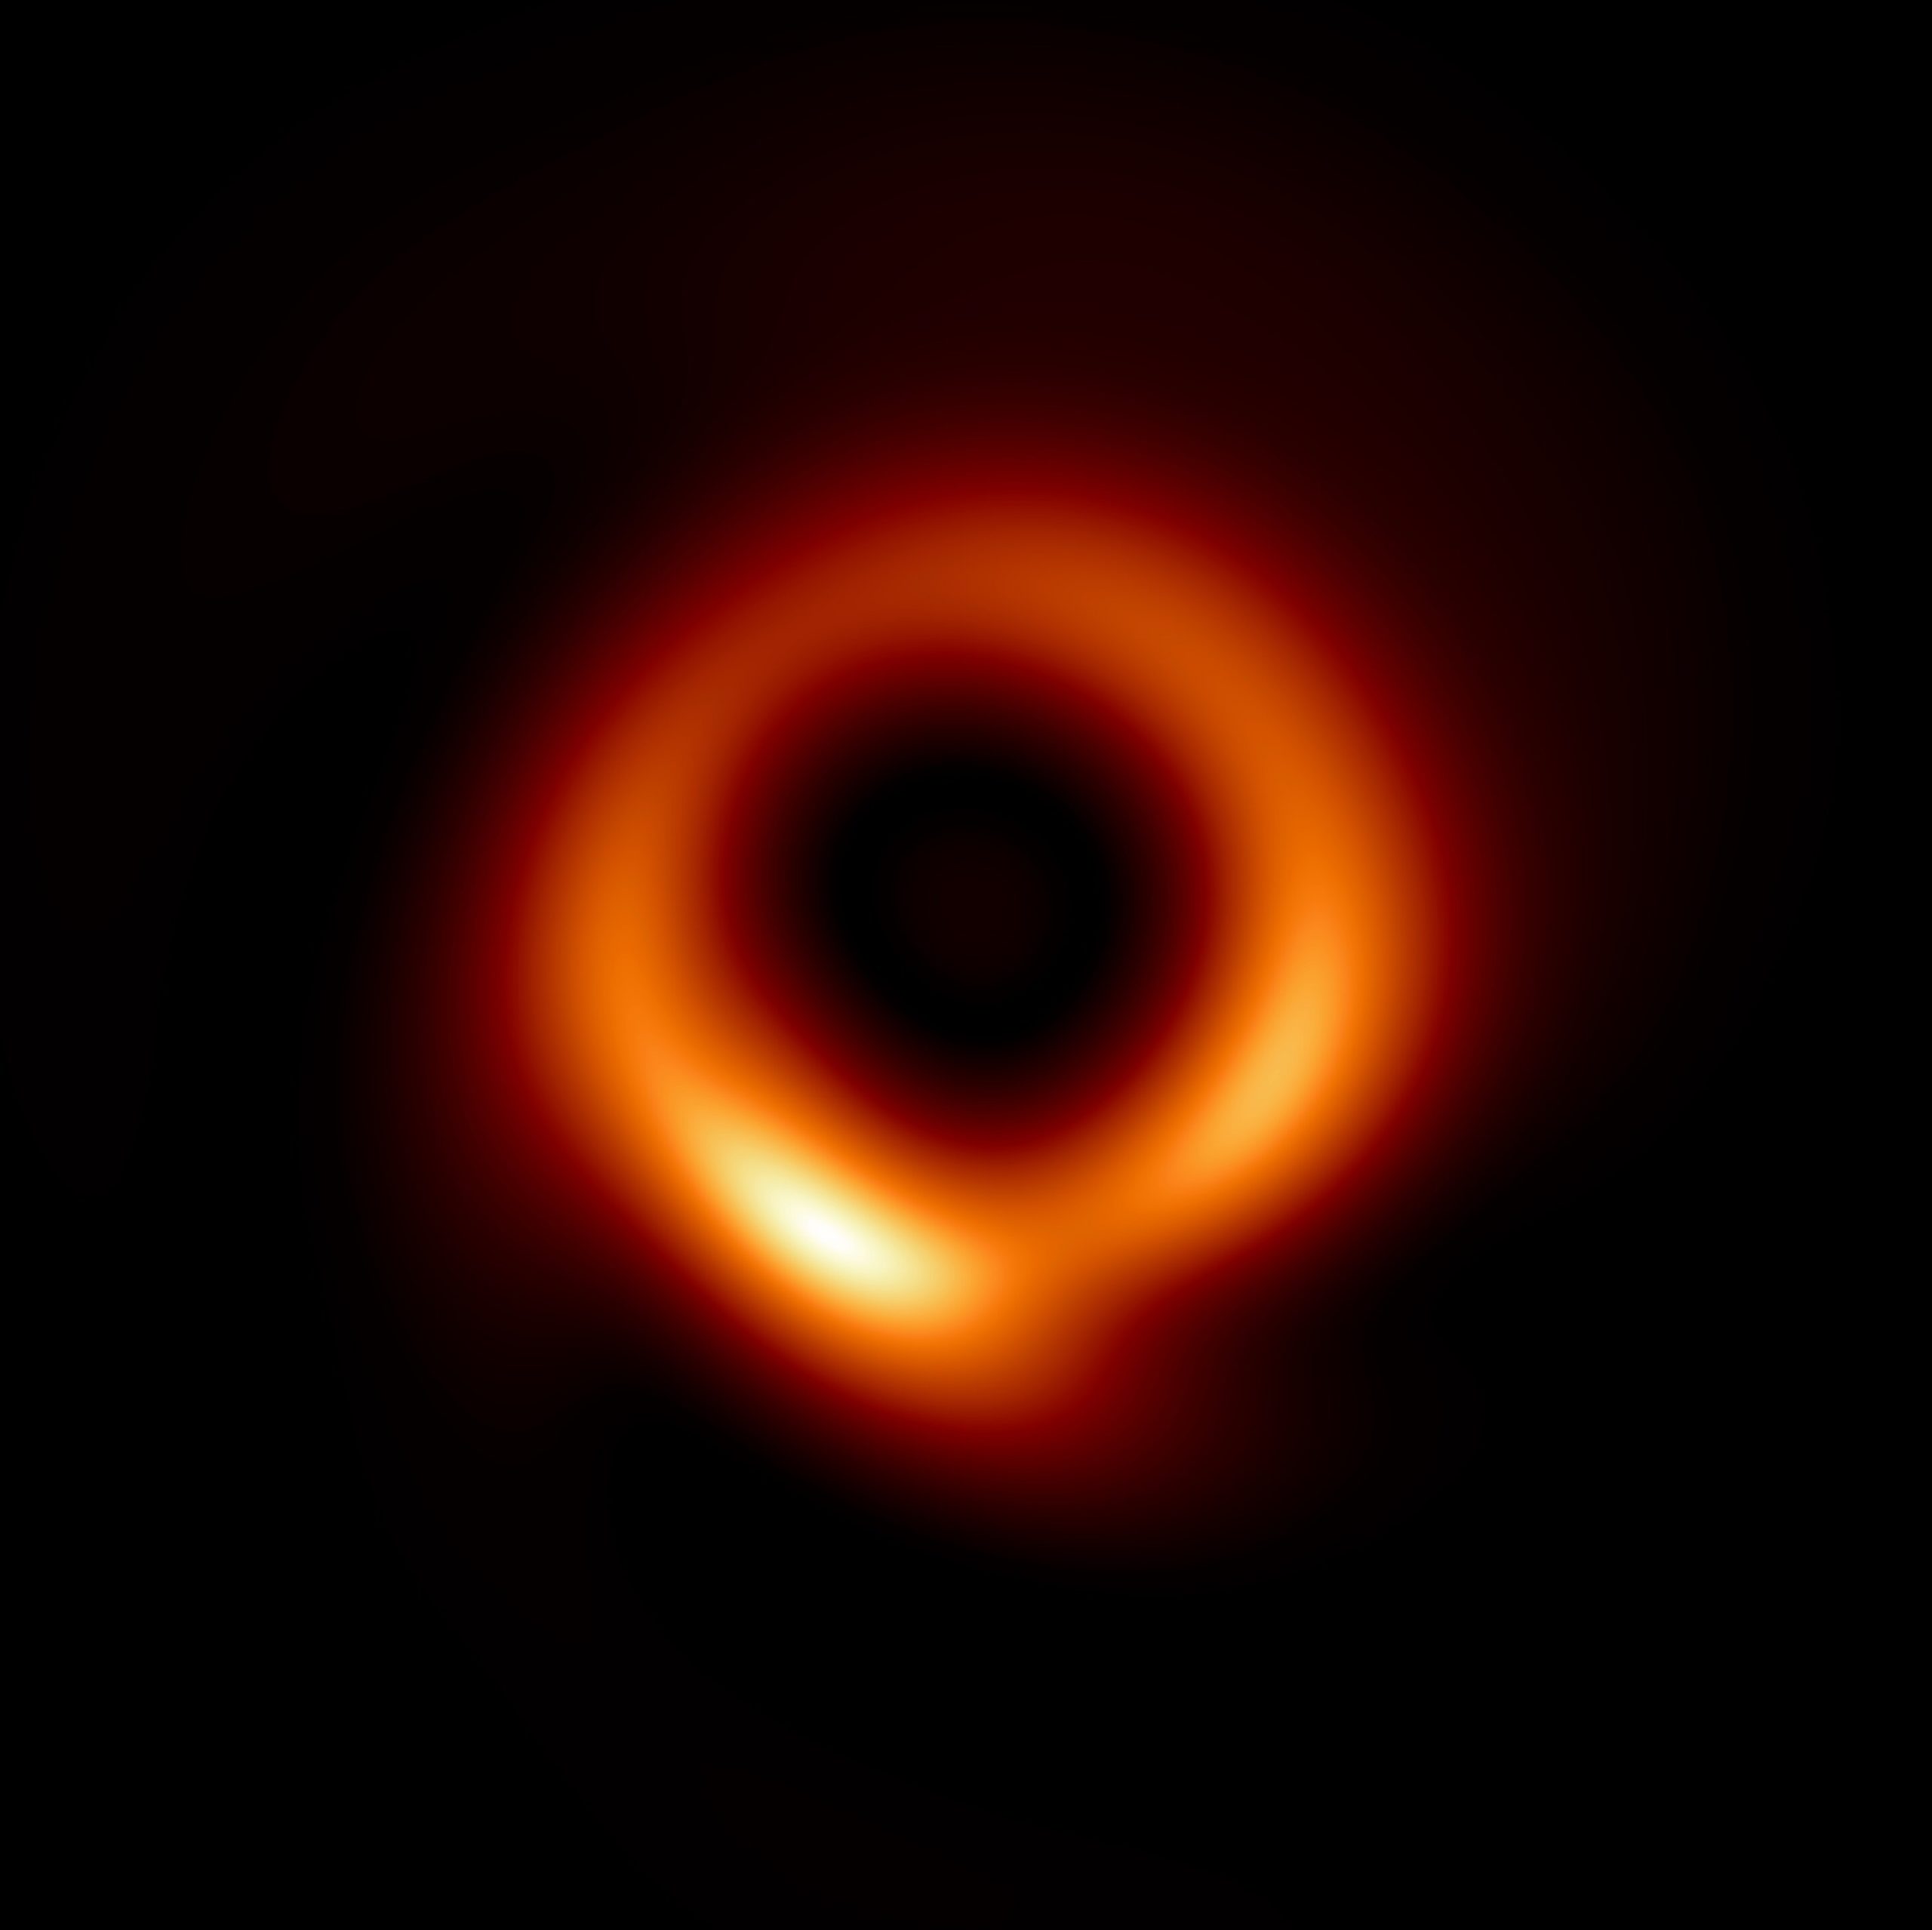 Новое изображение сверхмассивной черной дыры M87, созданное алгоритмом PRIMO с использованием данных EHT 2017 года.